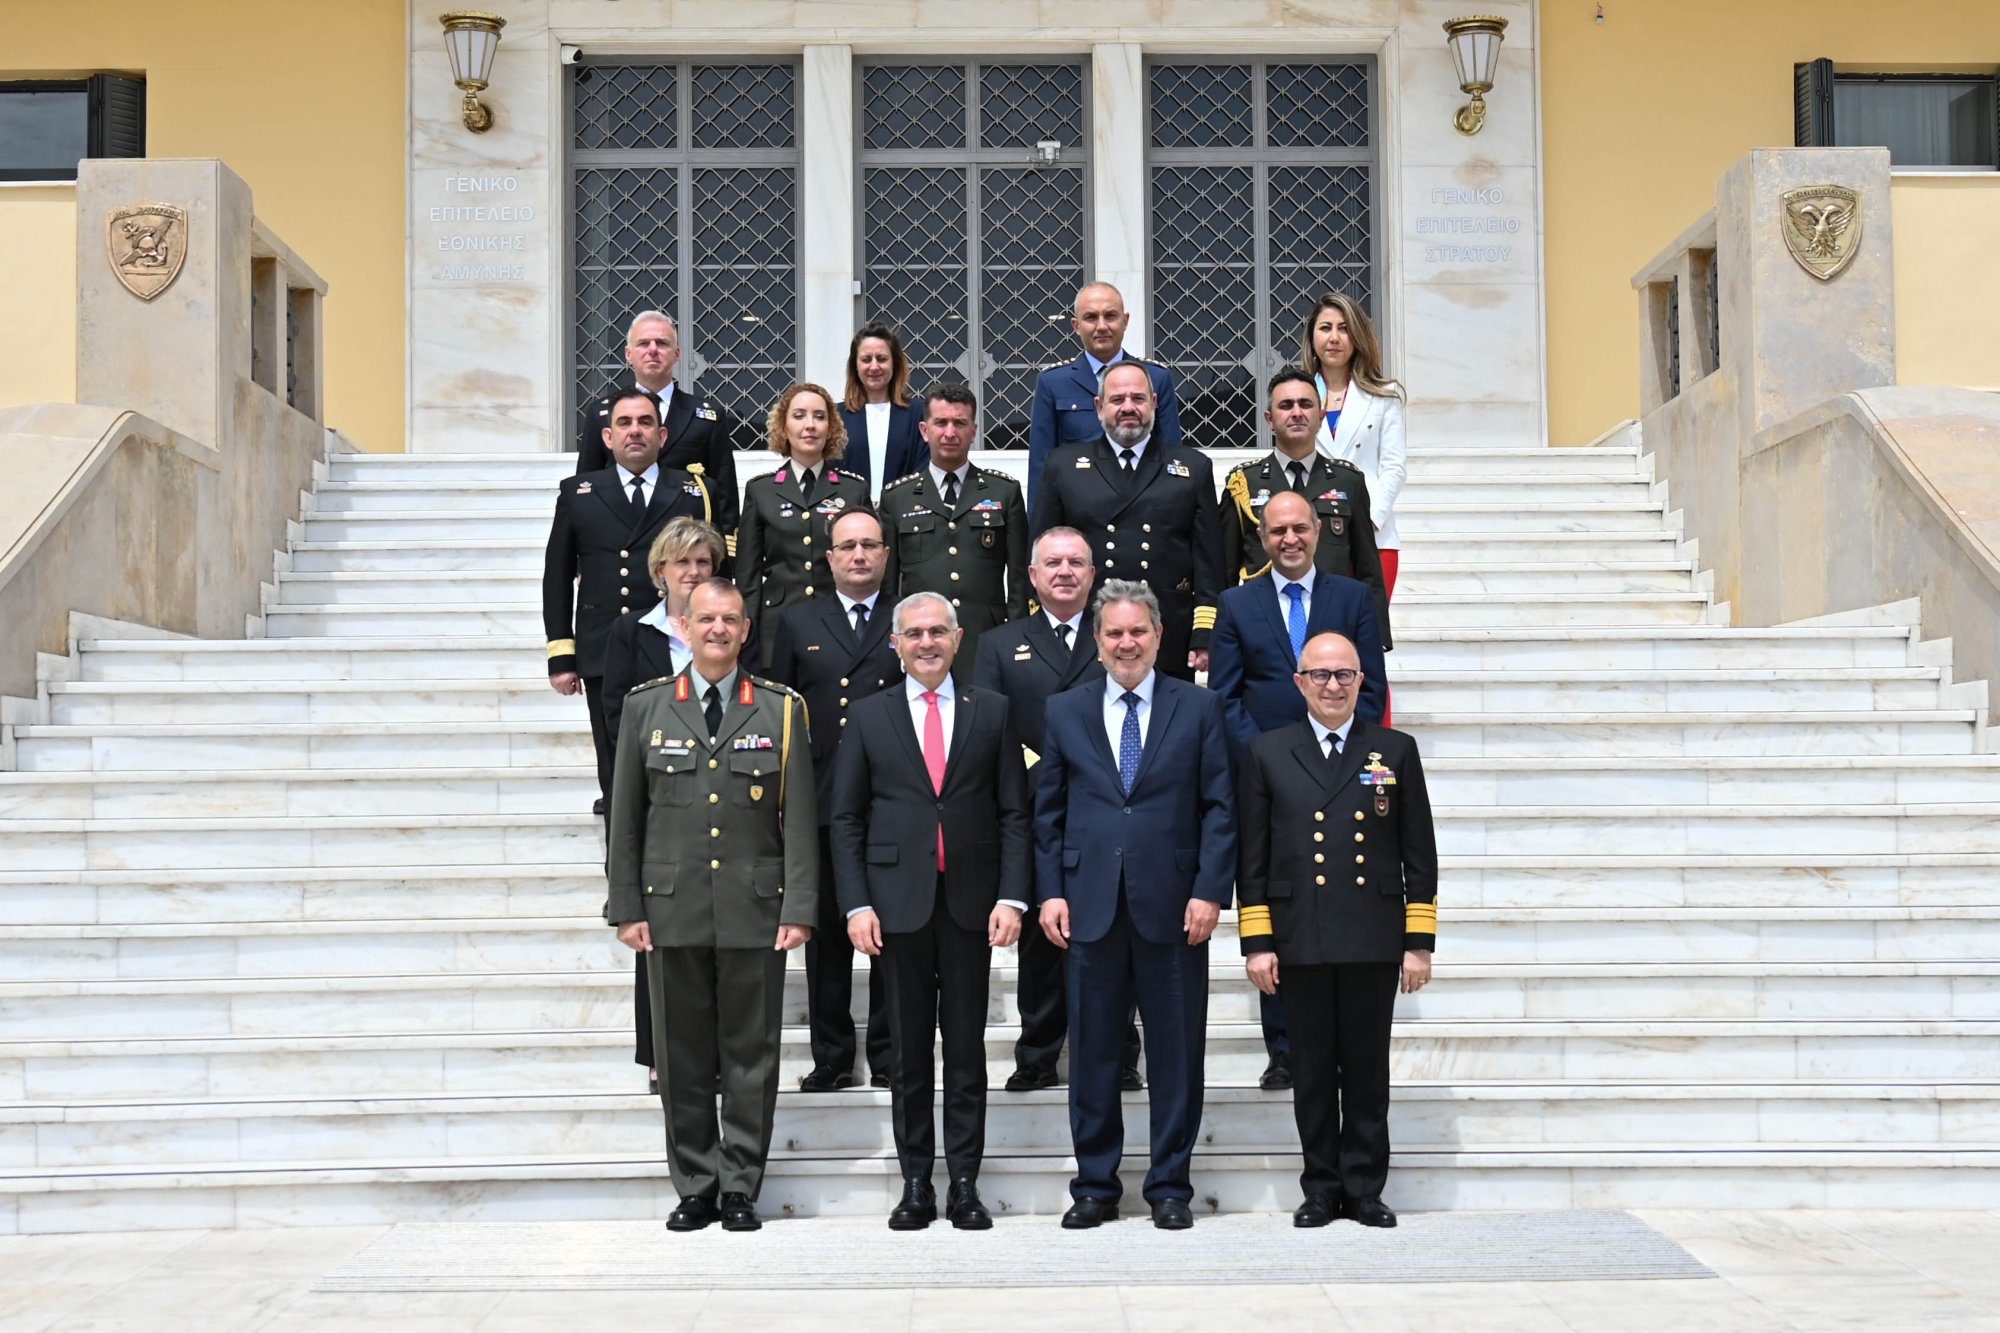 Σε καλό κλίμα η συνάντηση για τα ΜΟΕ - Συζητήθηκε ανταλλαγή επισκέψεων ανώτατων στελεχών των Ενόπλων Δυνάμεων